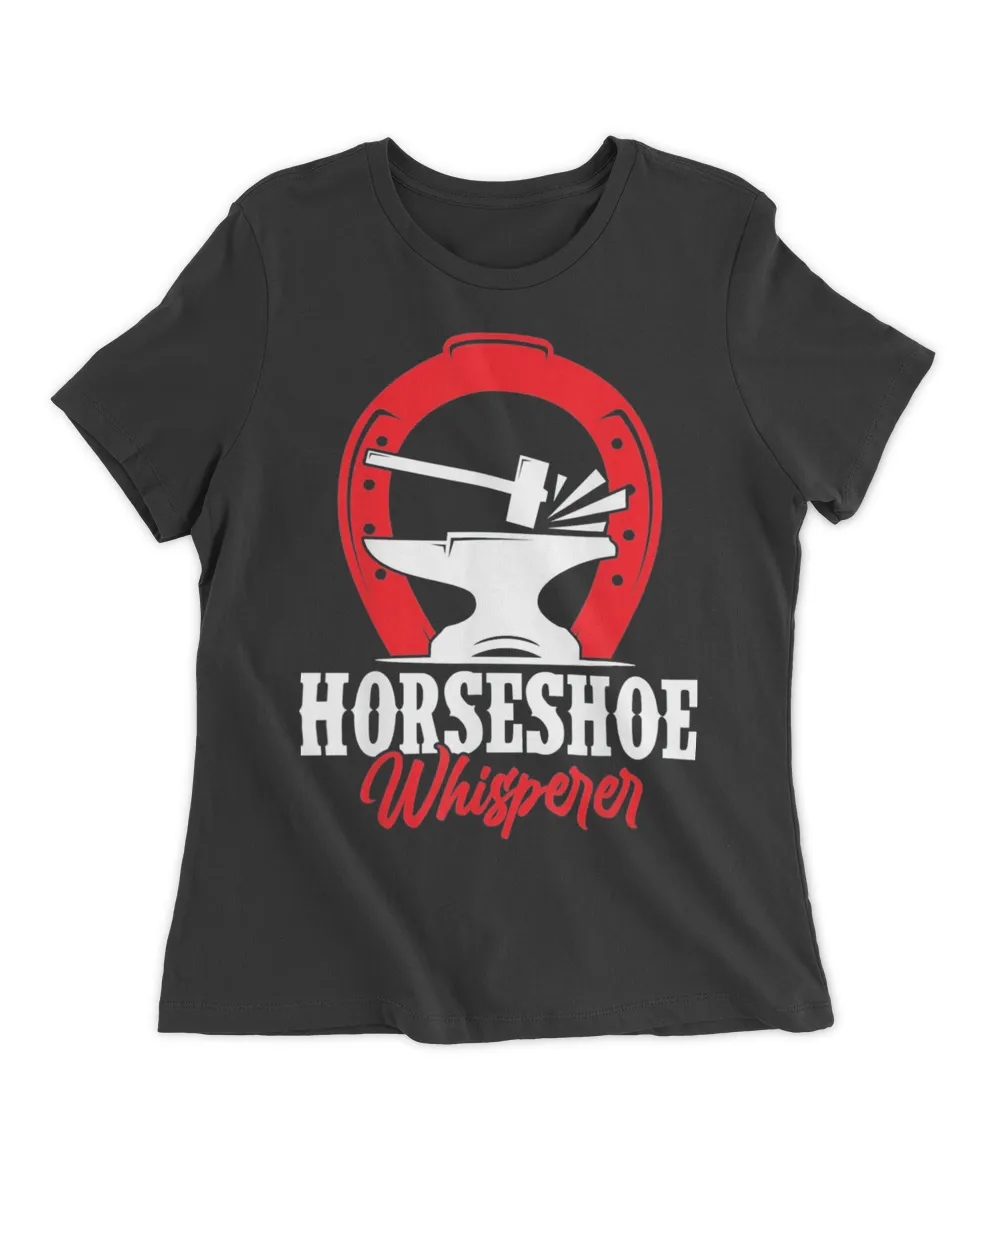 Horseshoe Whisperer Shirt